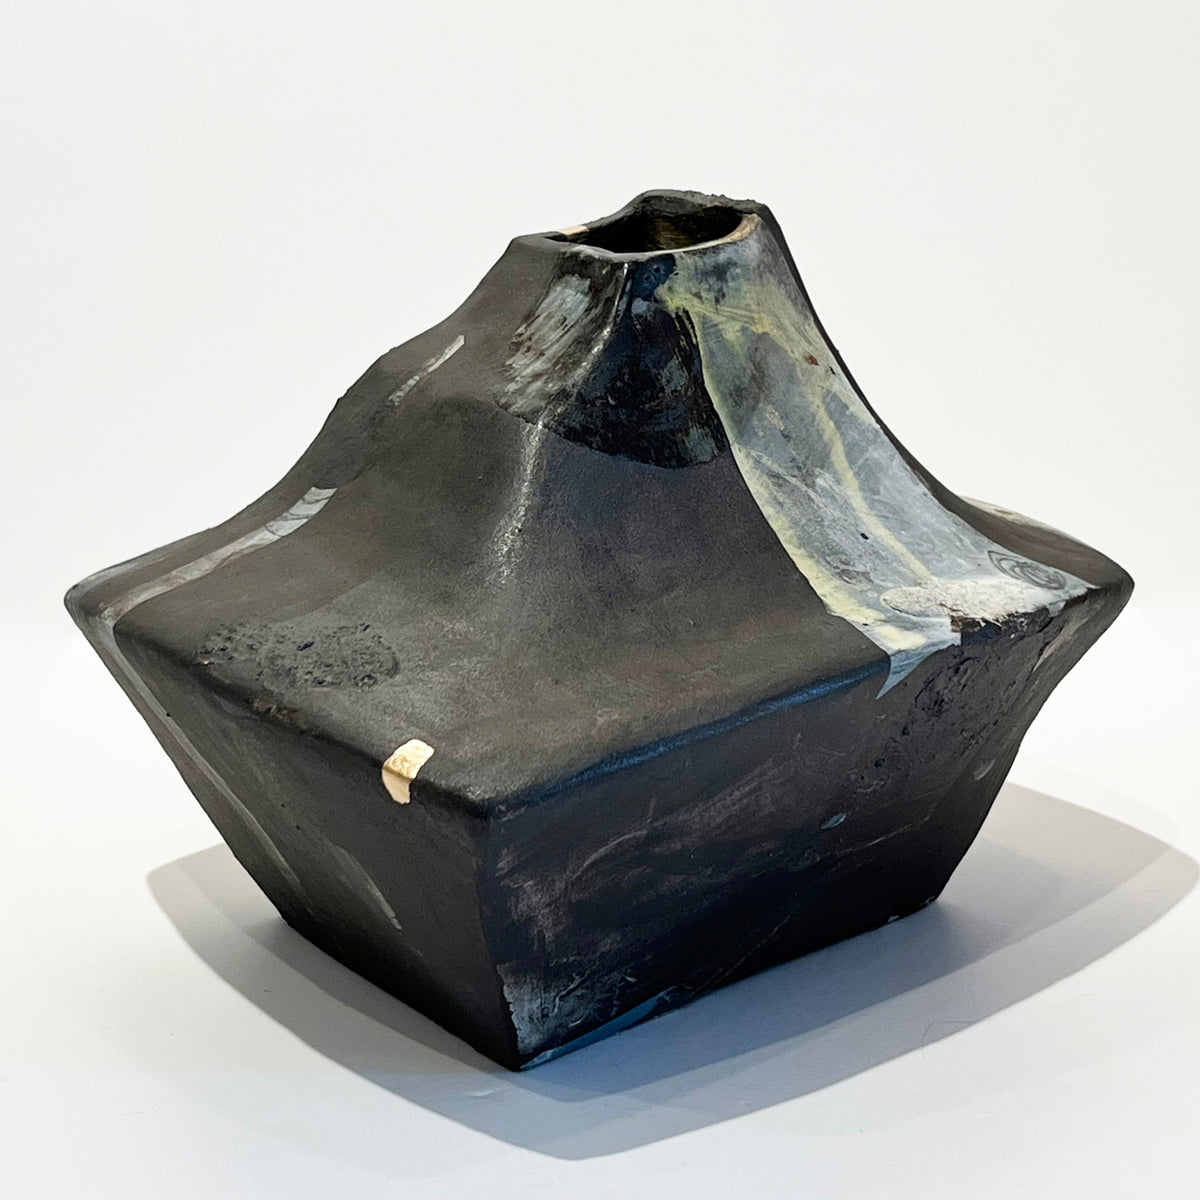 Mariana Bolanos Inclan - Low Wide Black Vase